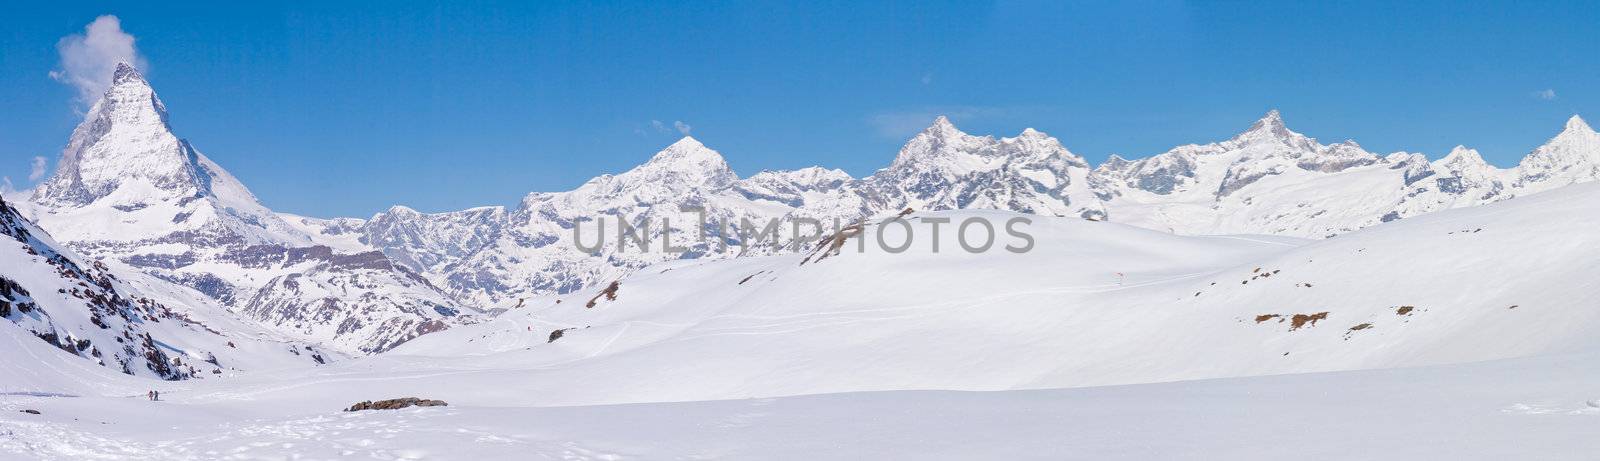 Matterhorn Panorama Switzerland by vichie81